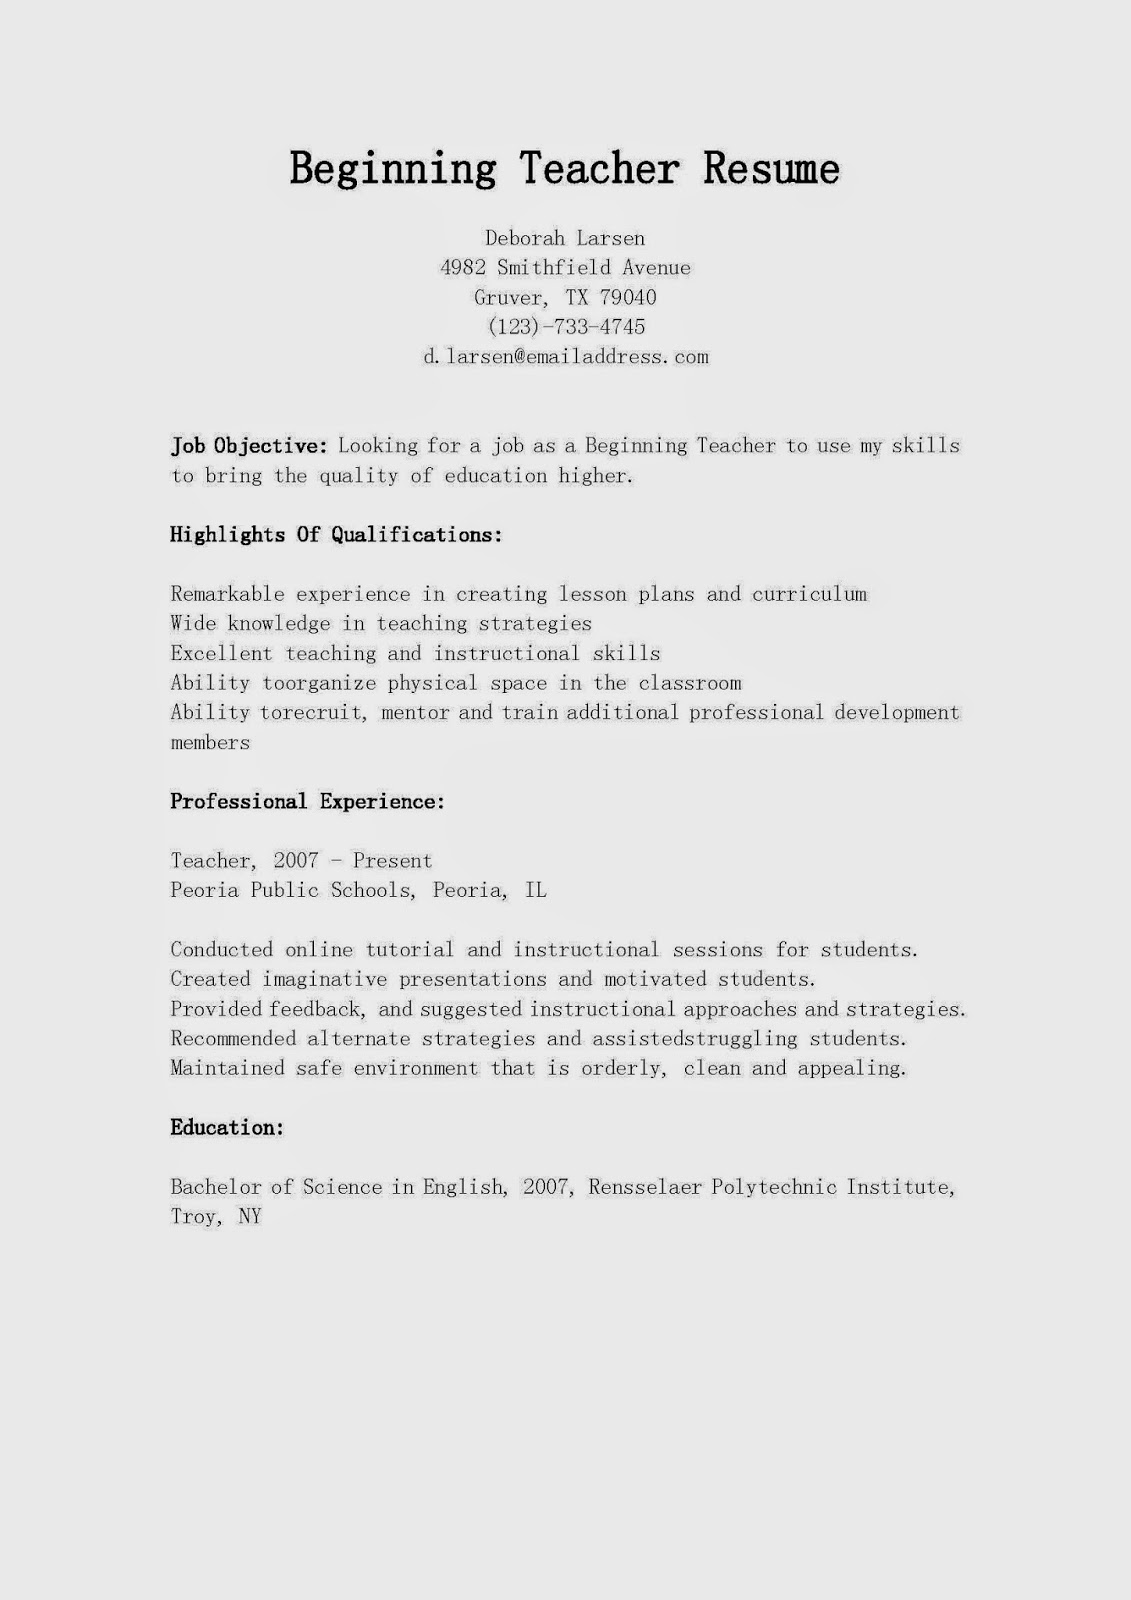 resume for beginner teacher